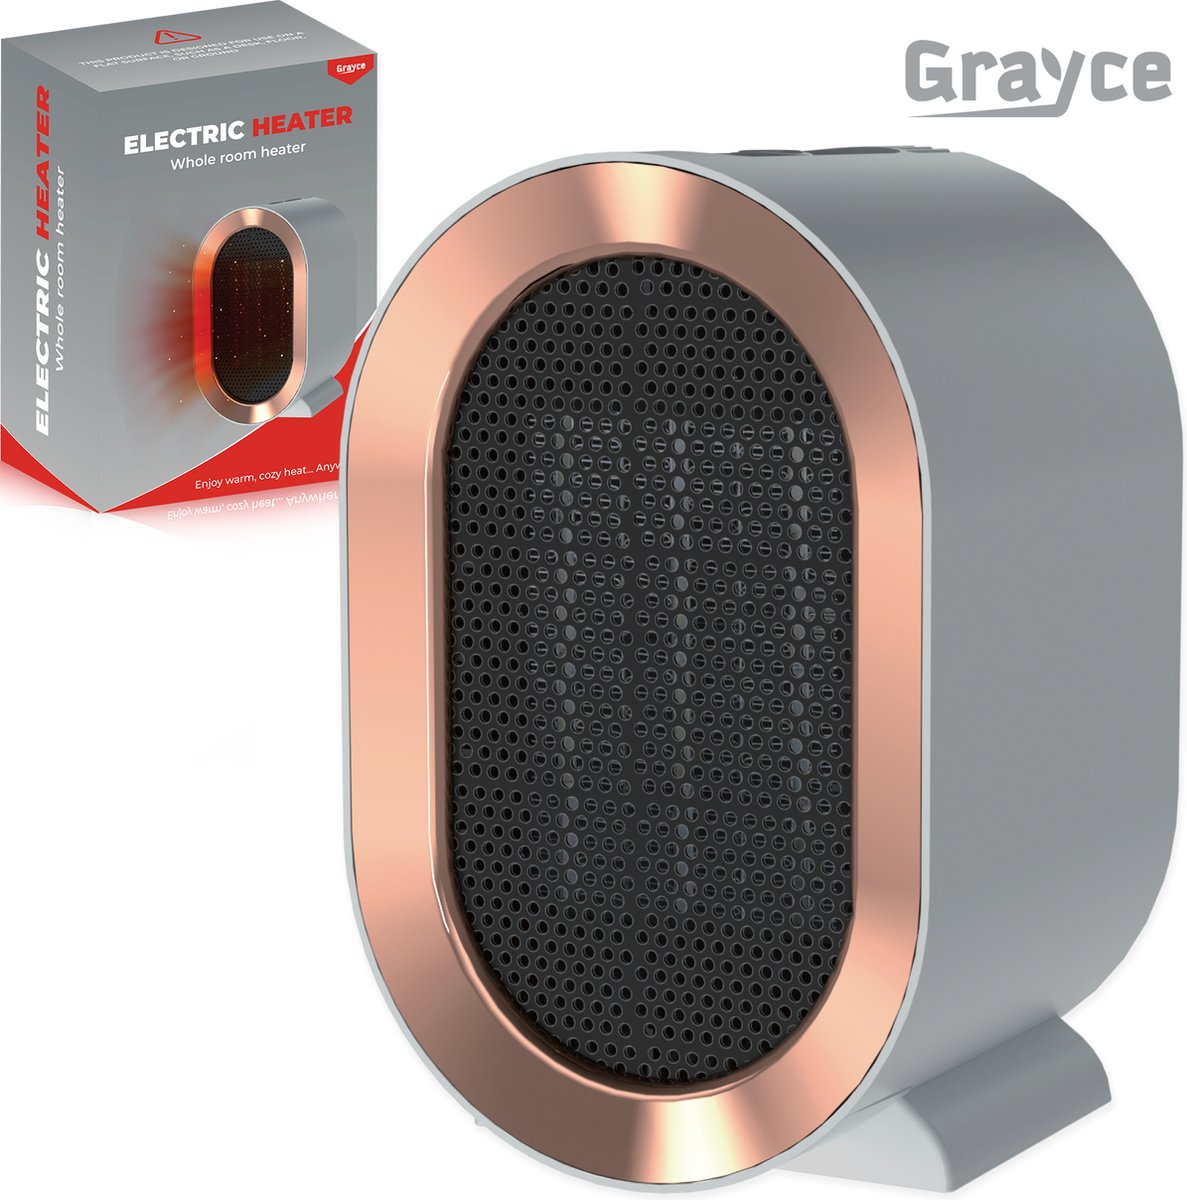 Grayce Elektrische Mini Heater – Elektrische kachel – Heater voor binnen – Kachelventilator – Elektrische verwarming – Desktop heater – 800/1200 WATT - Grijs